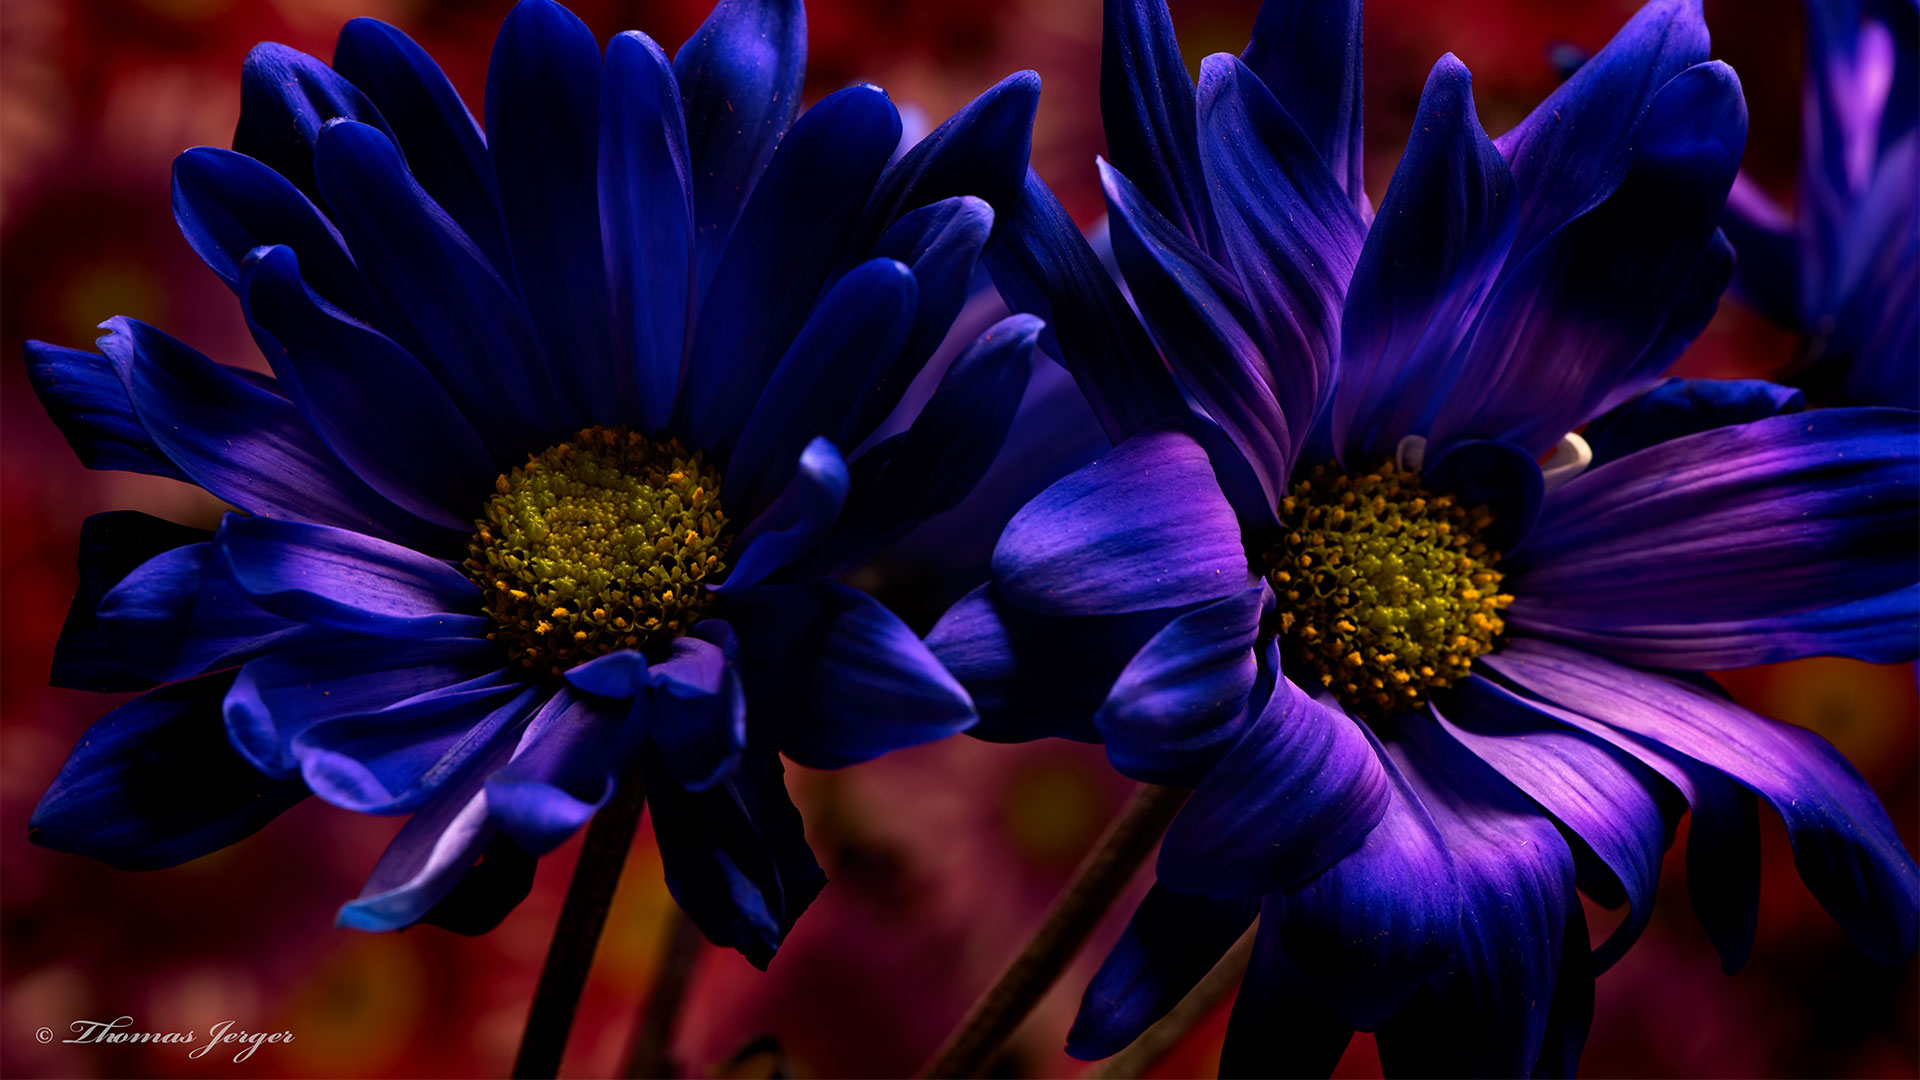 fonds d'écran hd pour ordinateur portable,fleur,bleu,pétale,plante,plante à fleurs